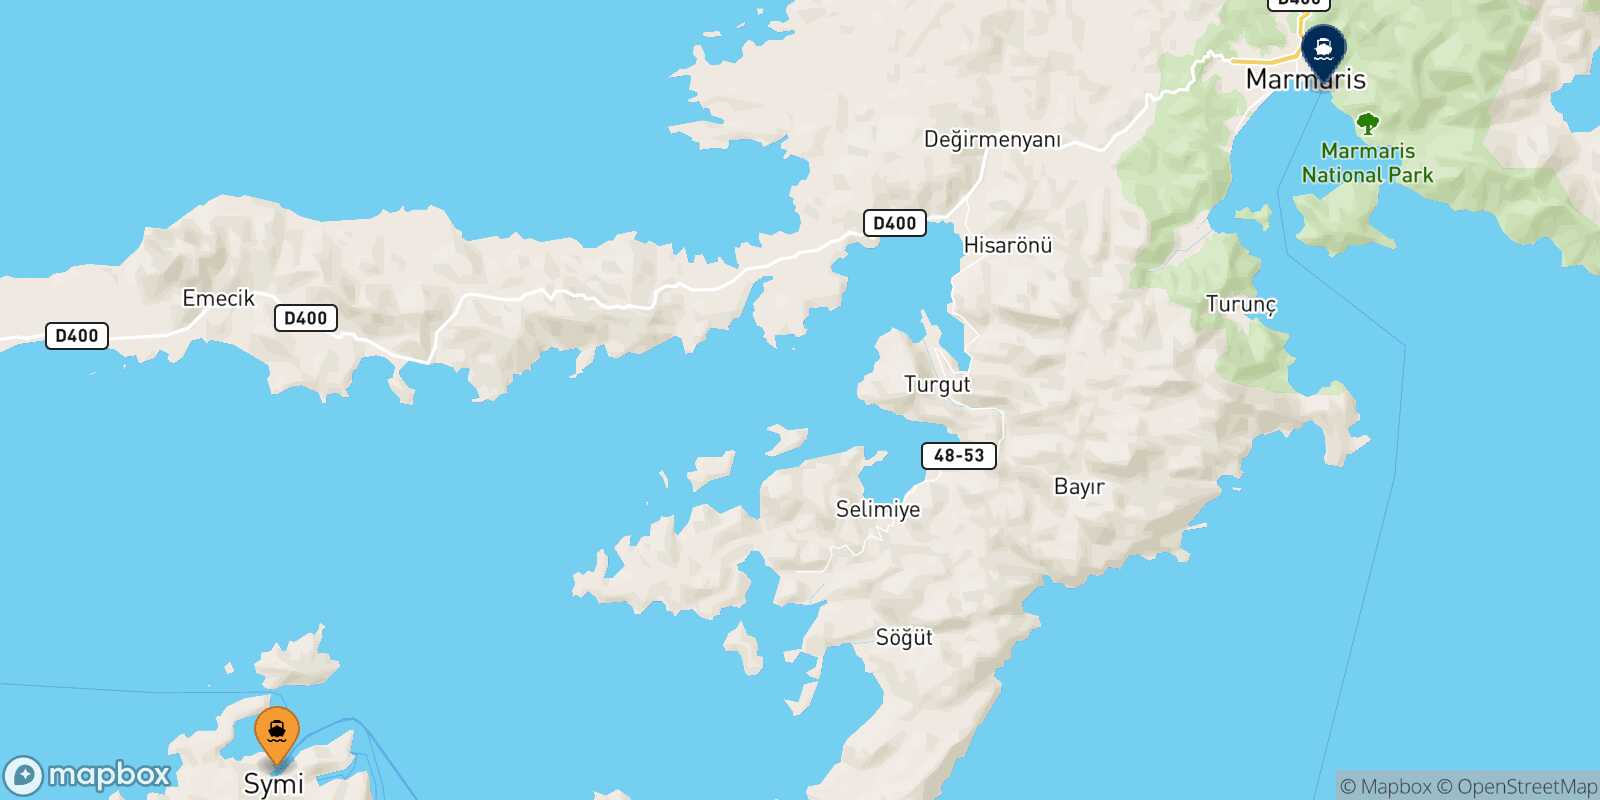 Symi Marmaris route map